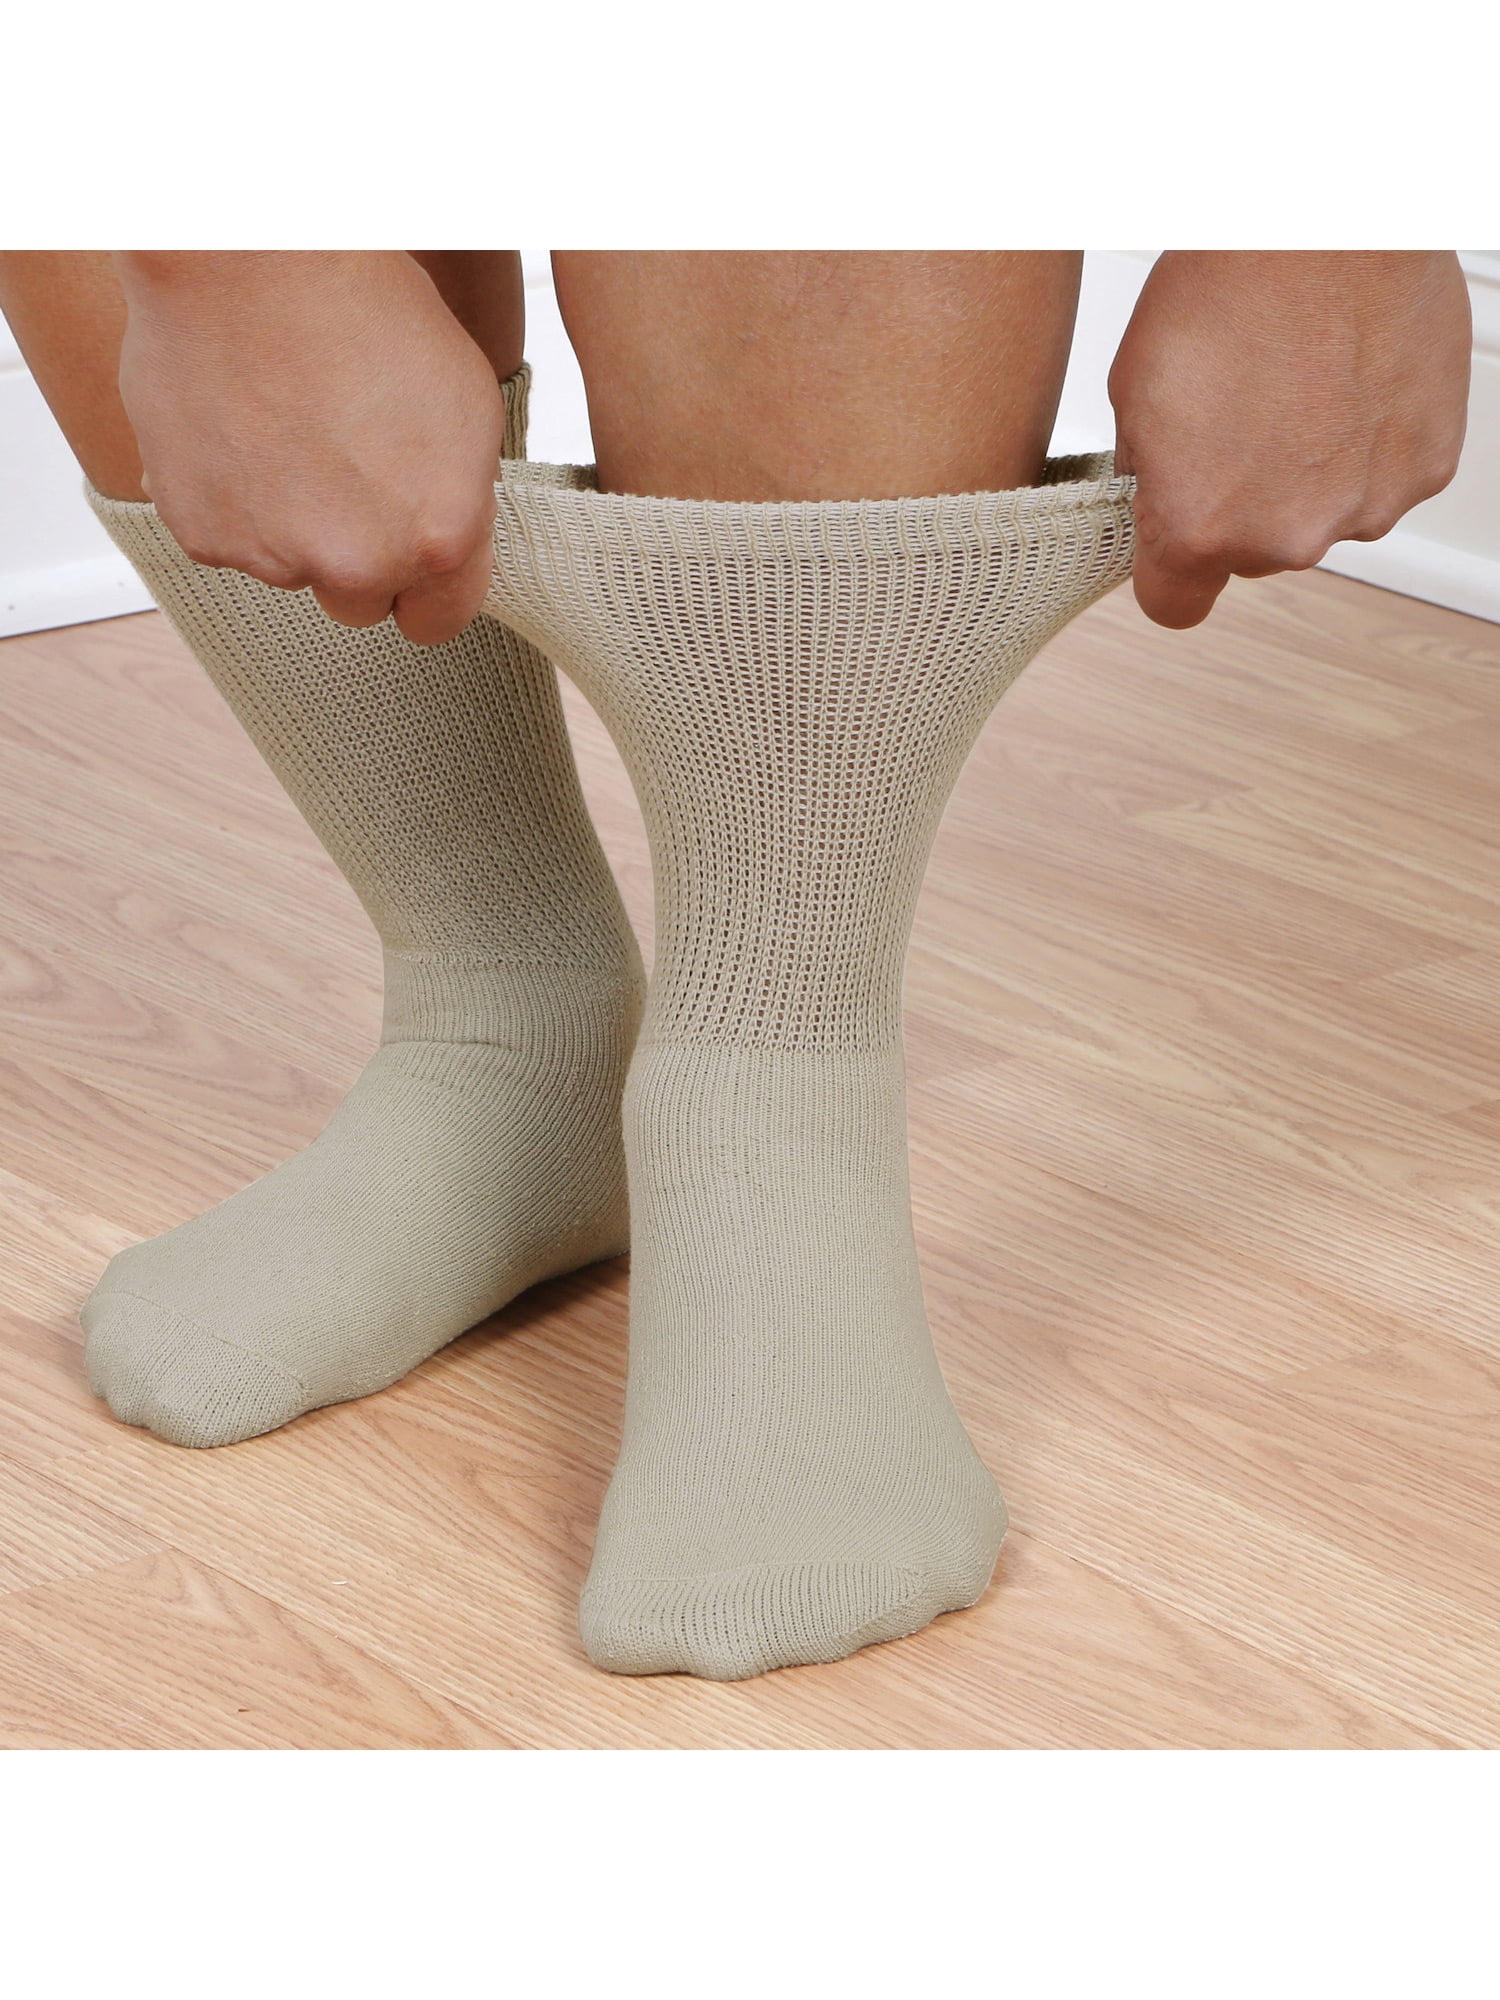 buster brown socks for men